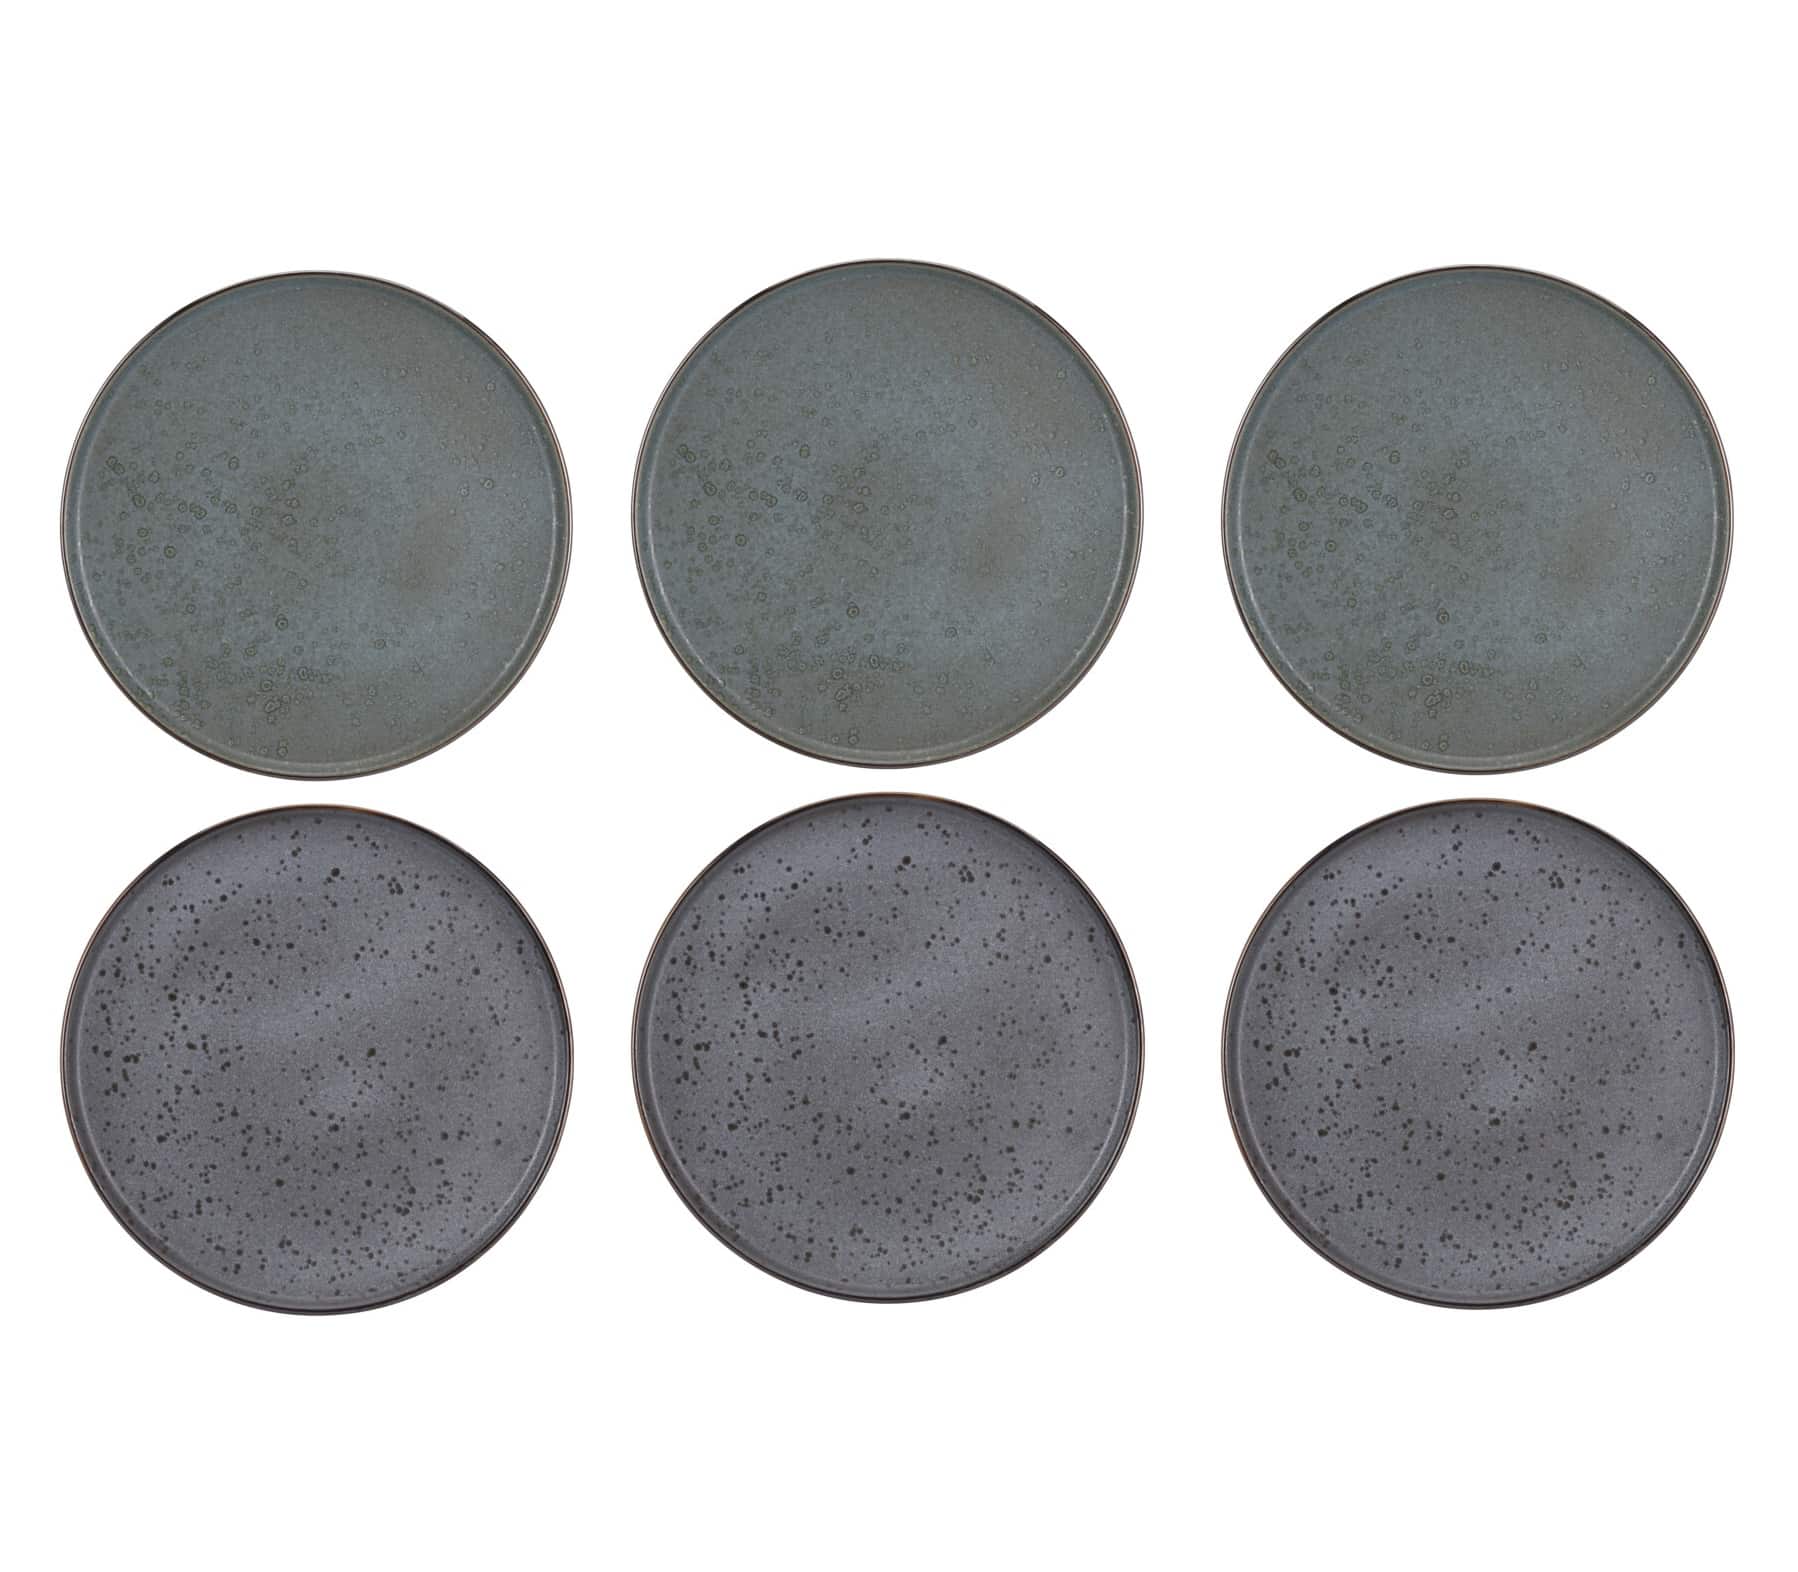 4goodz 6 stuks Aardewerk Dinerborden in 2 kleuren grijs/blauw 27 cm